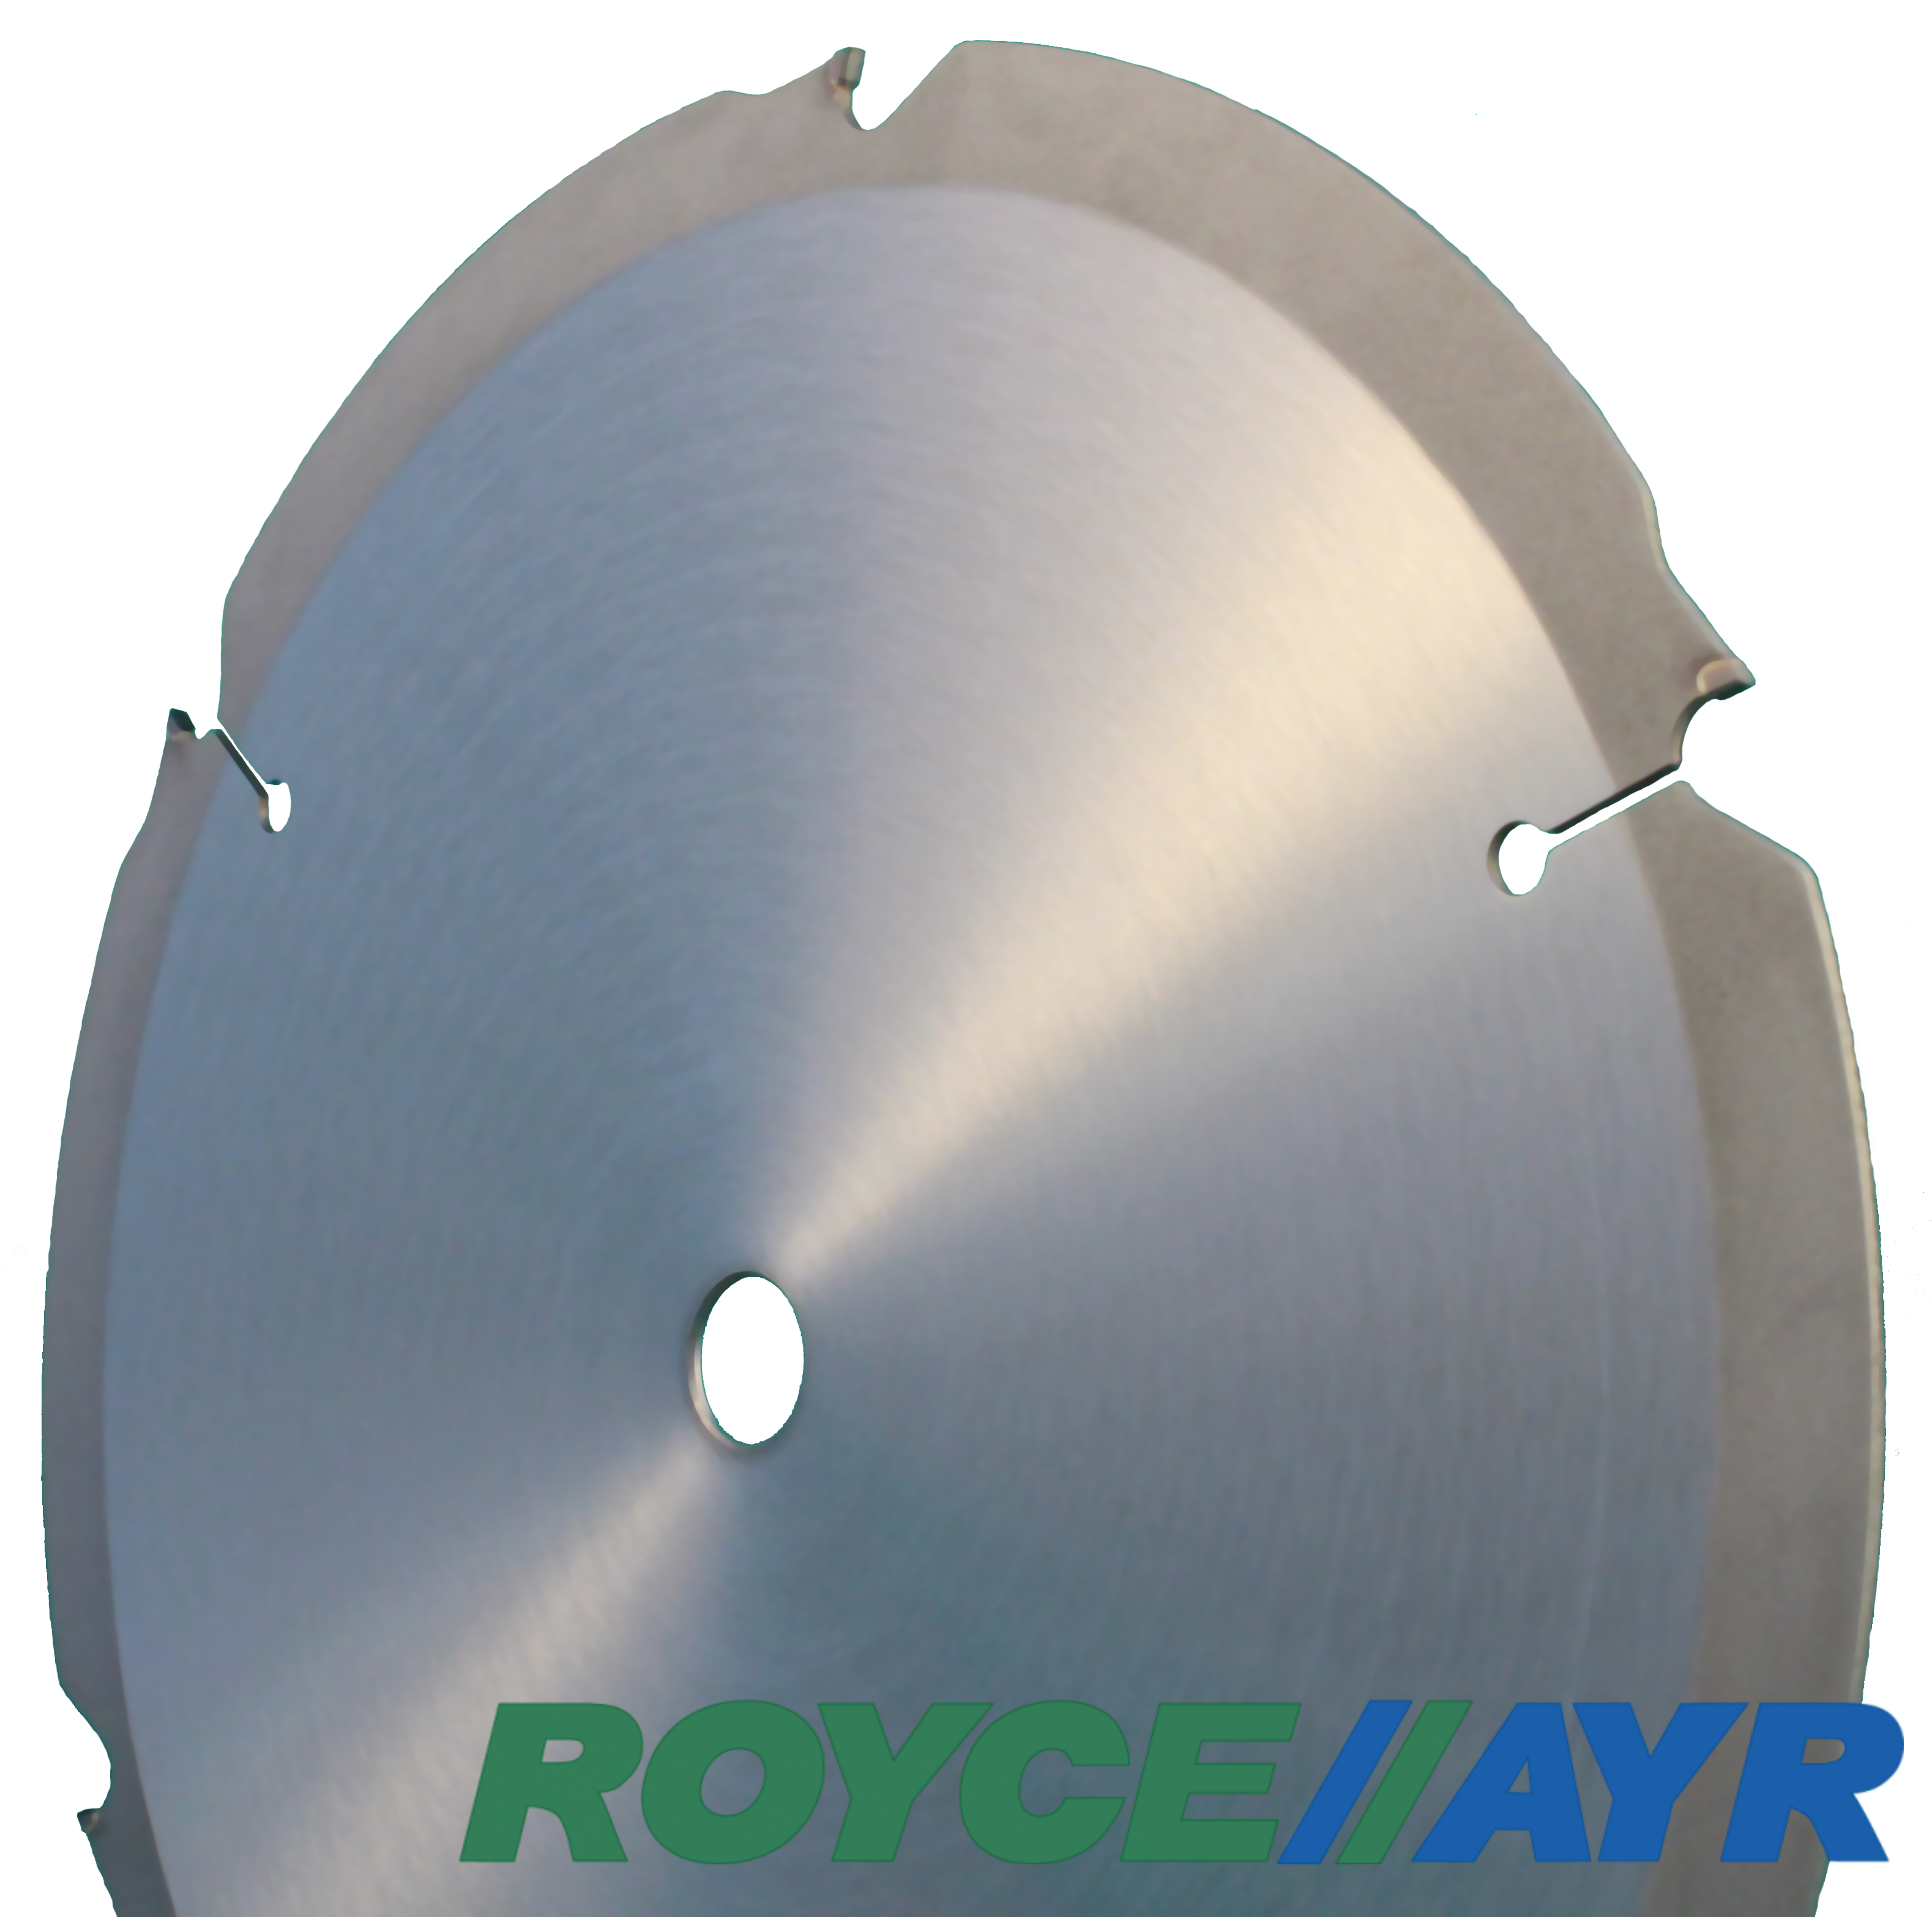 Royce//Ayr - S50 Fibro-ciment | Produit